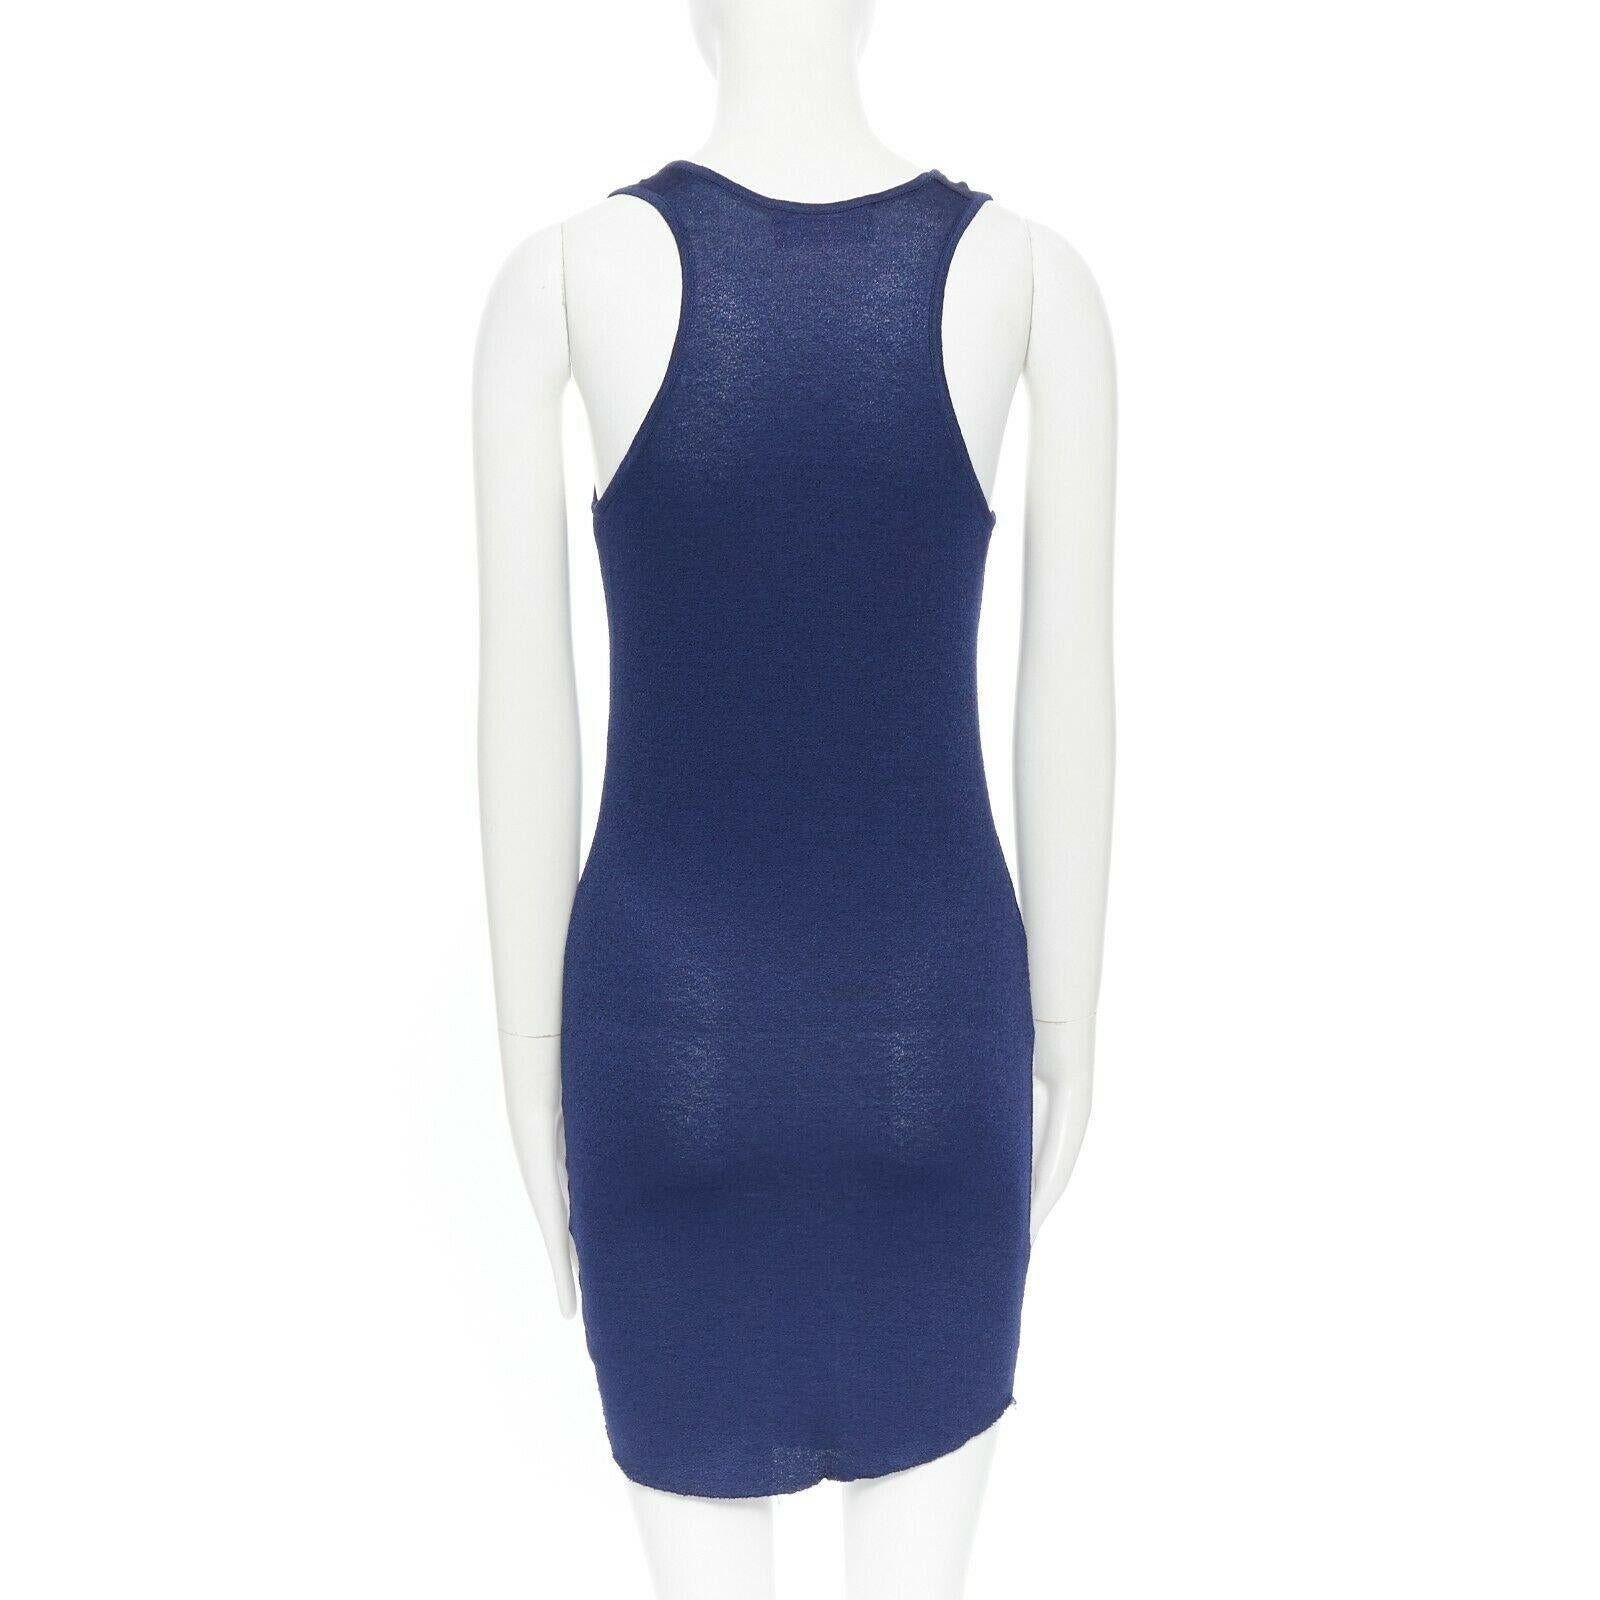 Women's JILL STUART COLLECTION classic blue textured raw-edges hem sleeveless tank dress